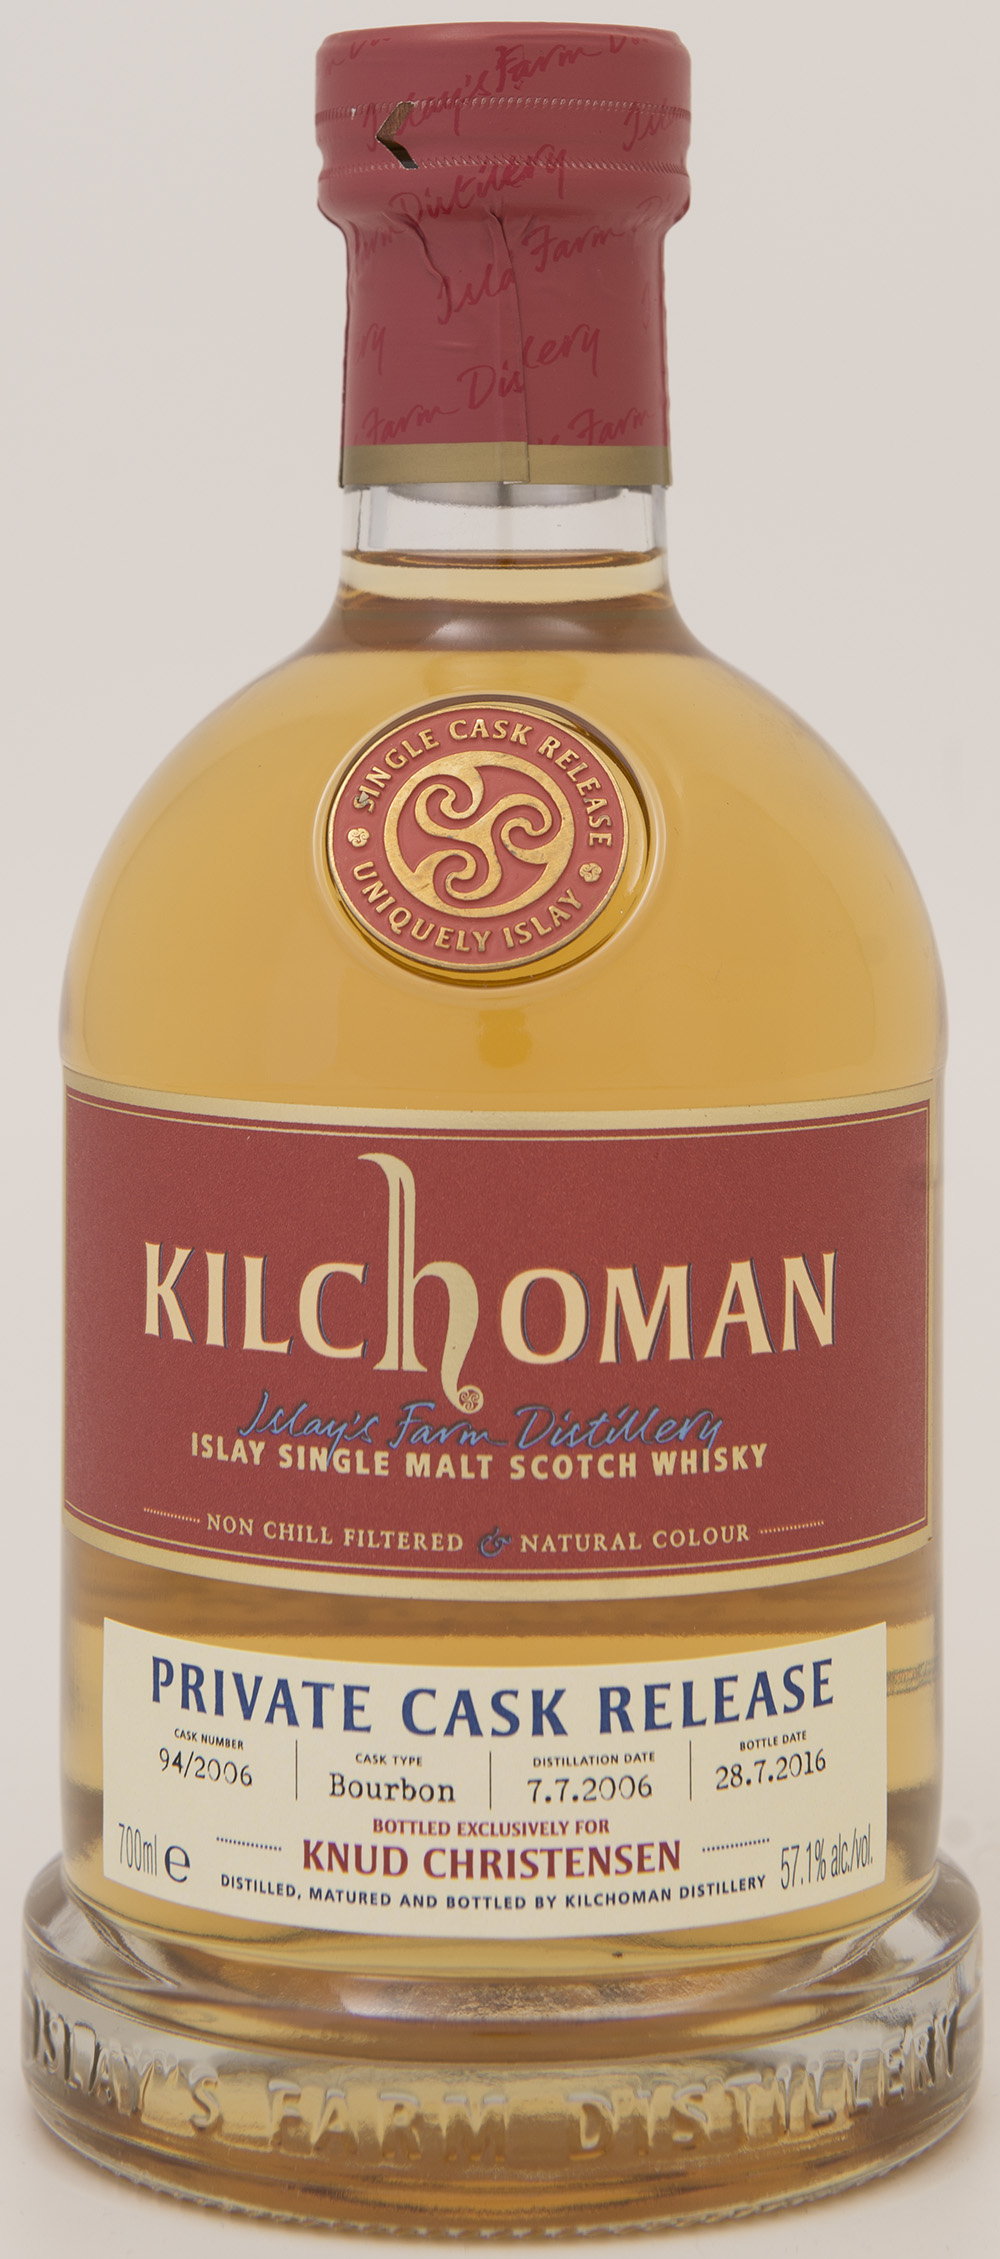 Billede: DSC_1419 - Kilchoman Private Cask Release 94 2006 - bottle front.jpg